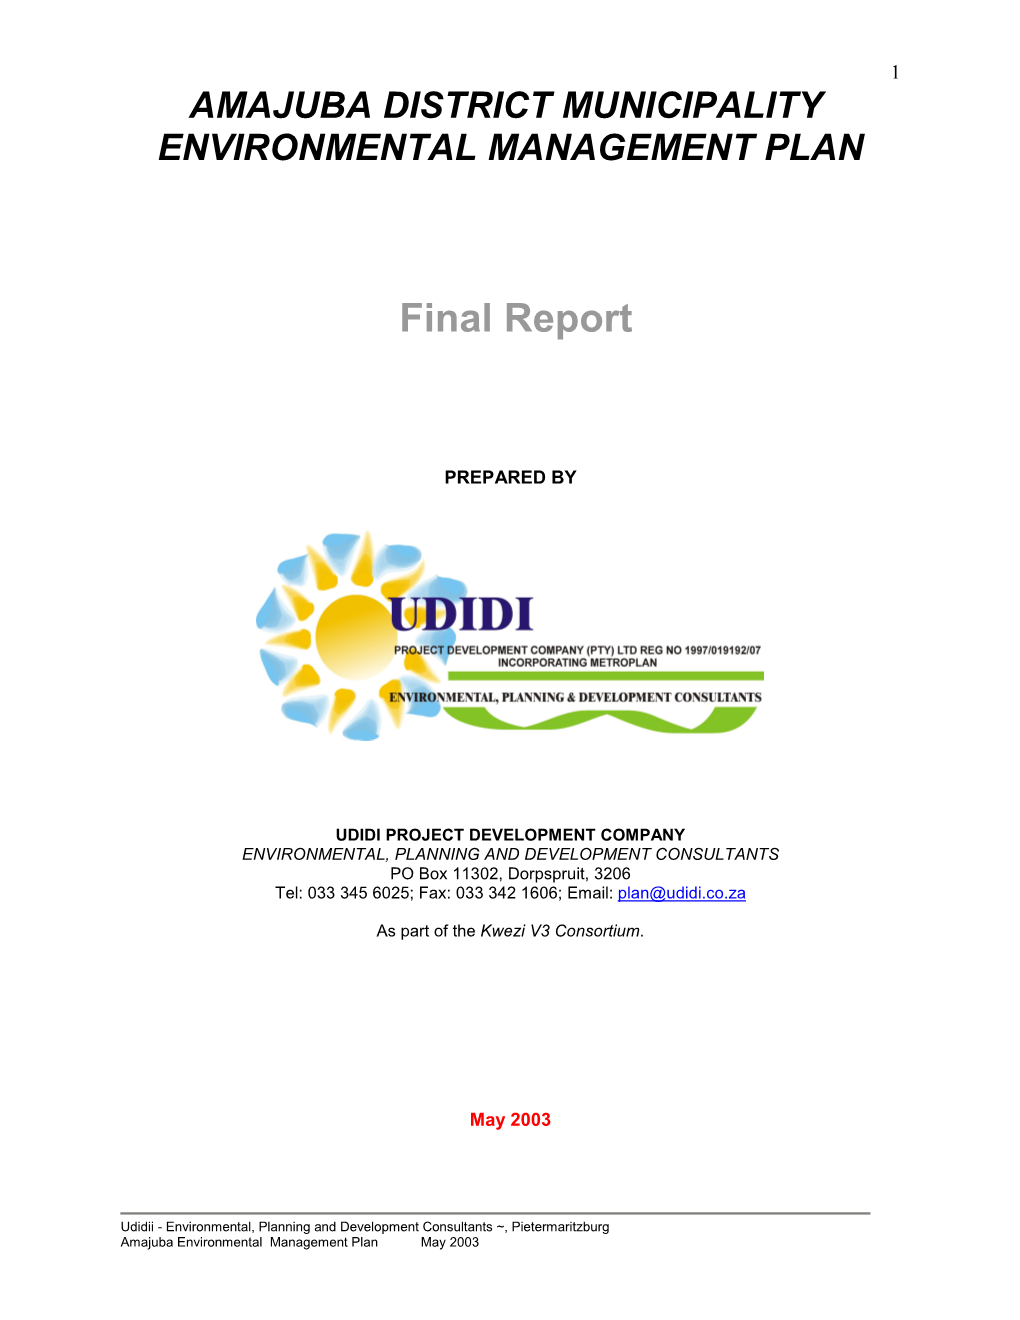 Amajuba District Municipality Environmental Management Plan